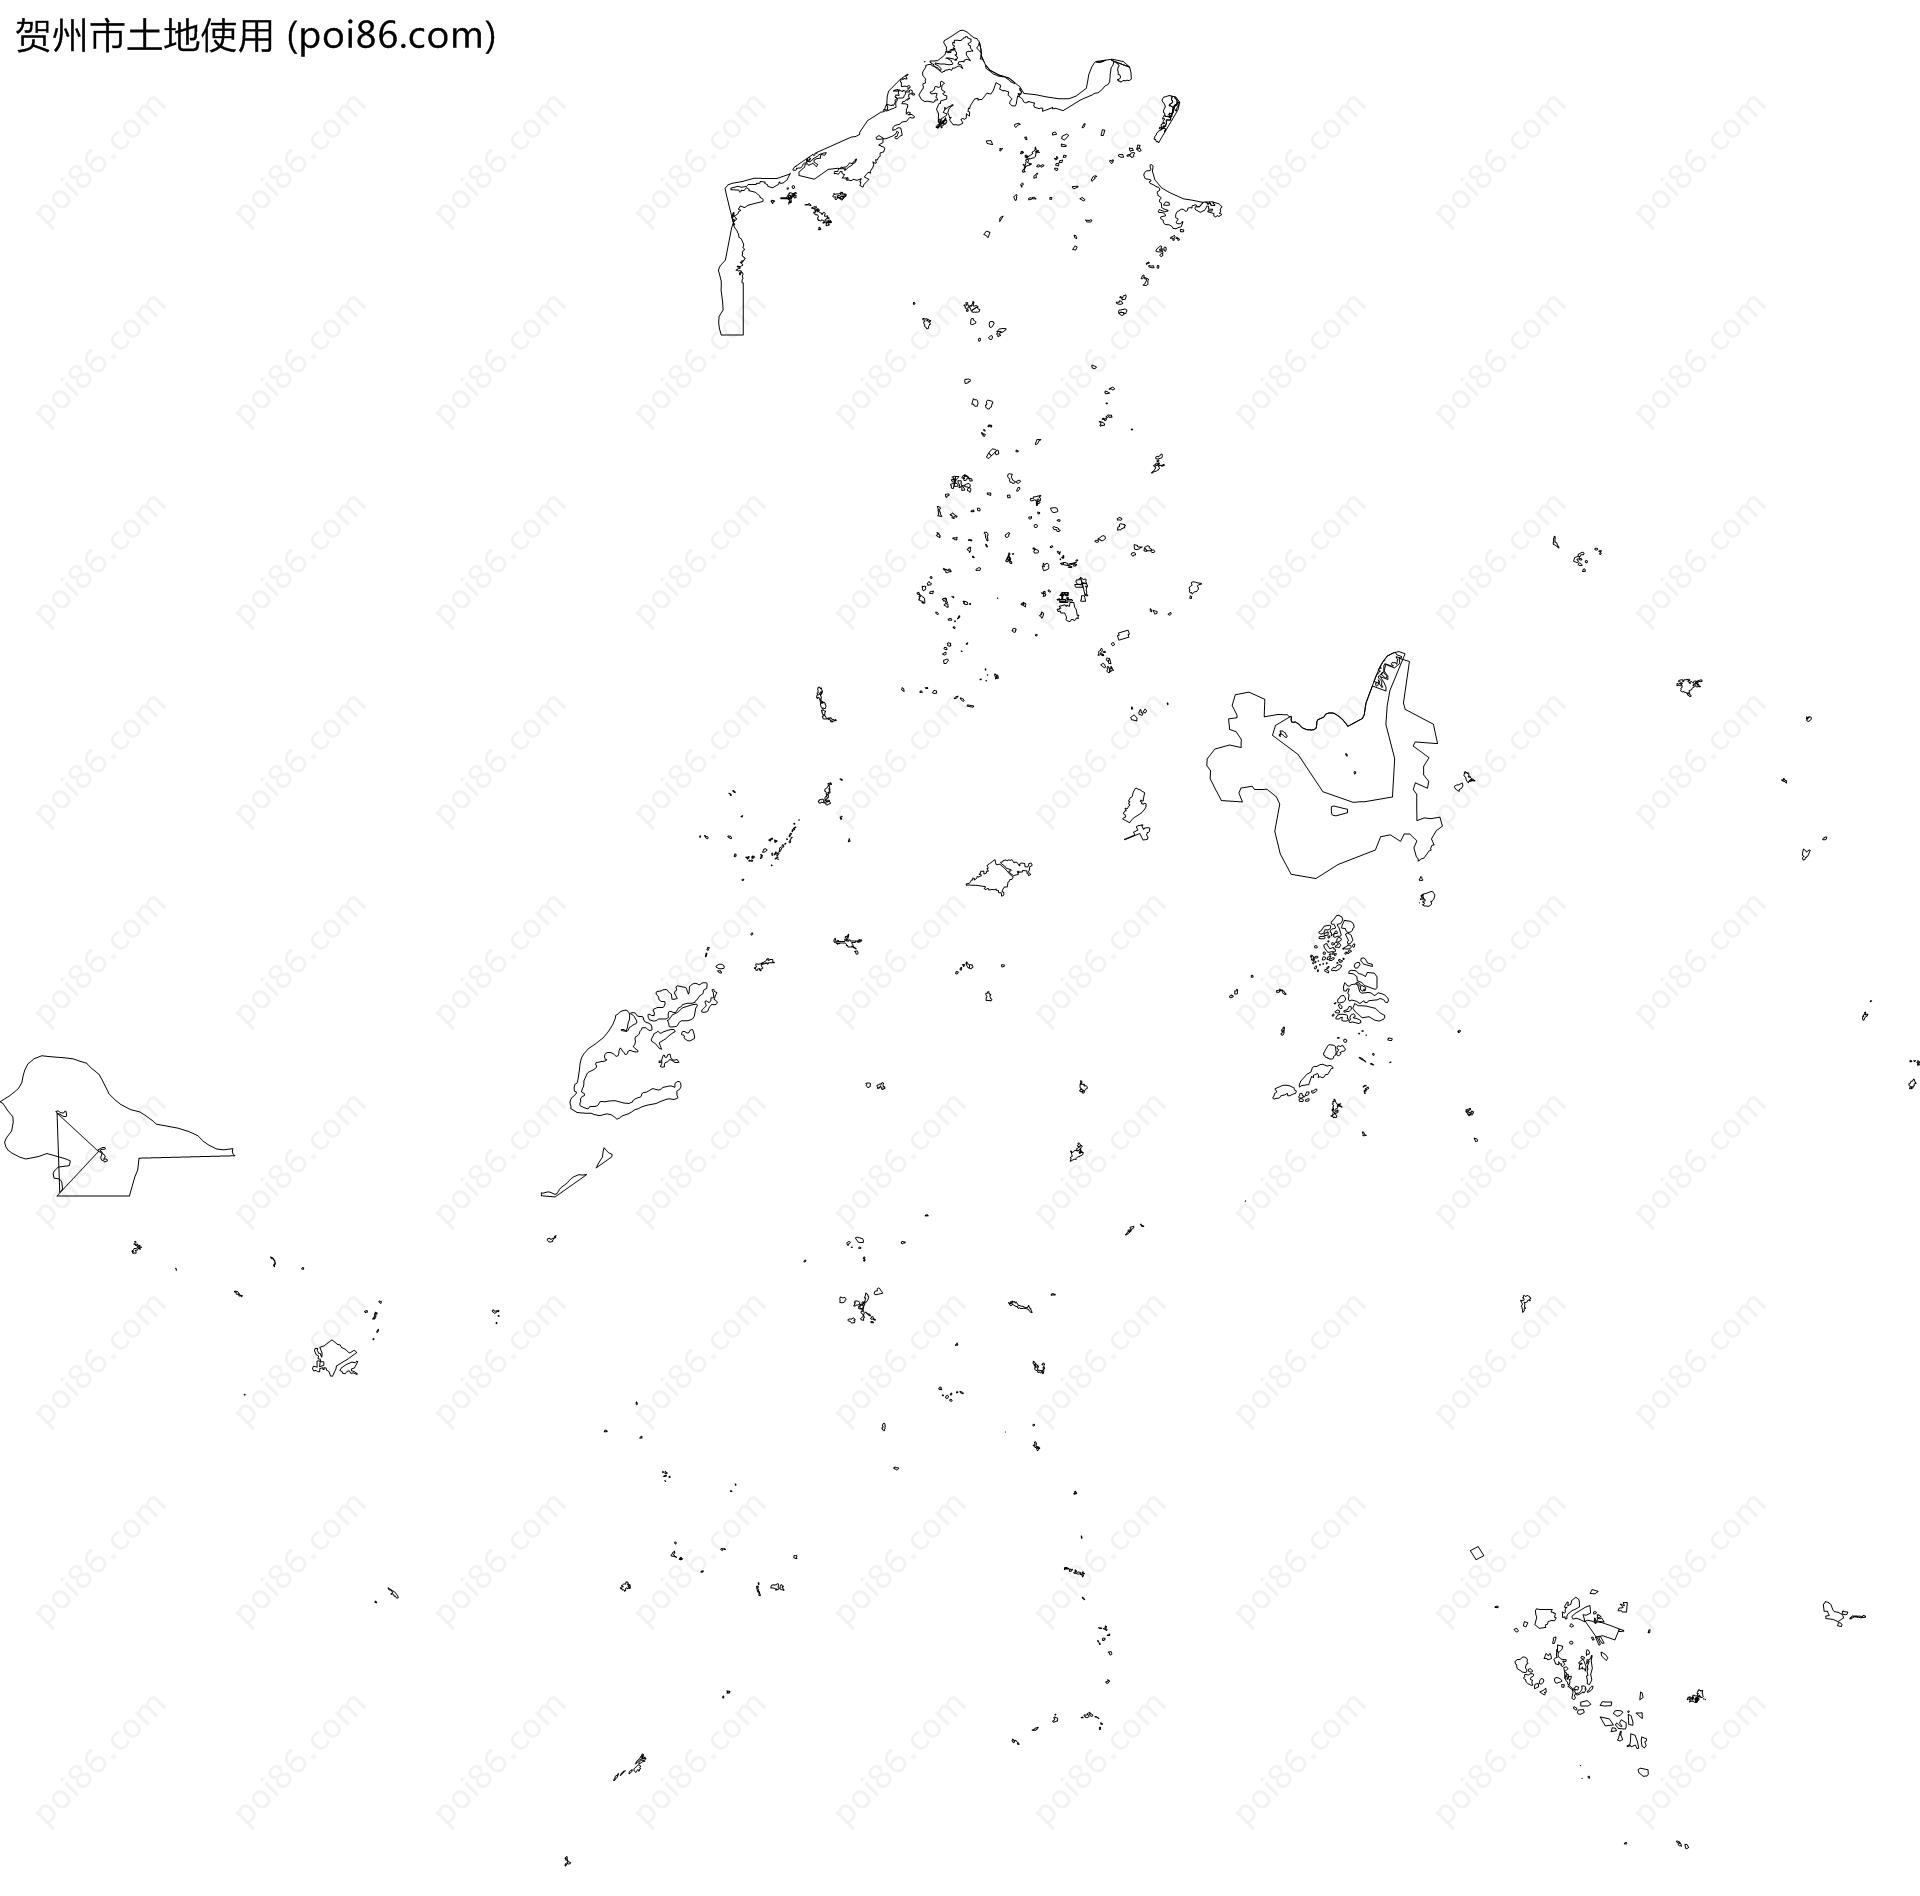 贺州市土地使用地图